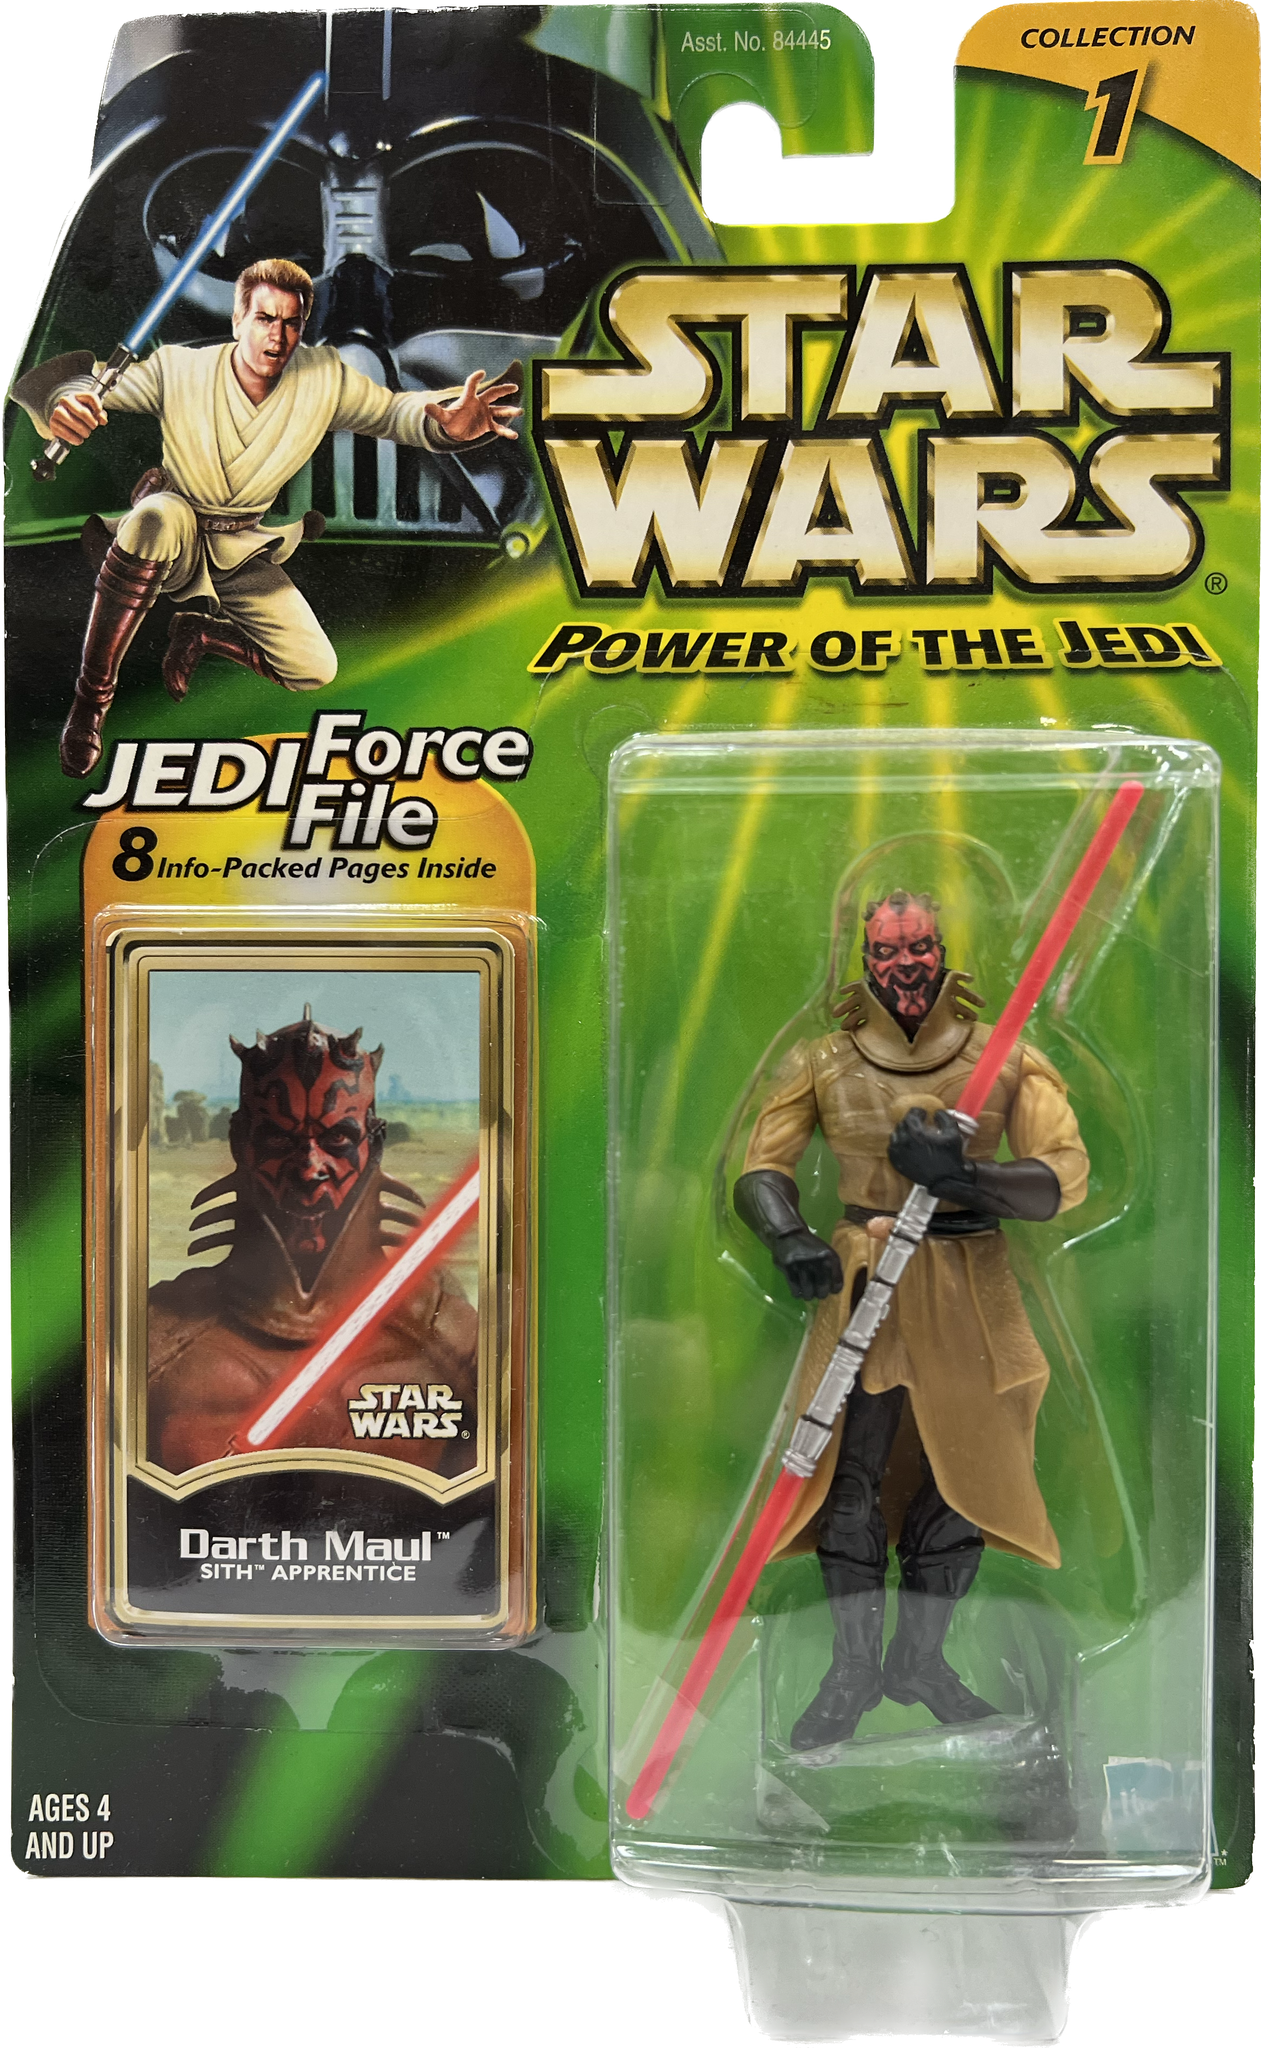 Star Wars Power of the Jedi Darth Maul Sith Apprentice